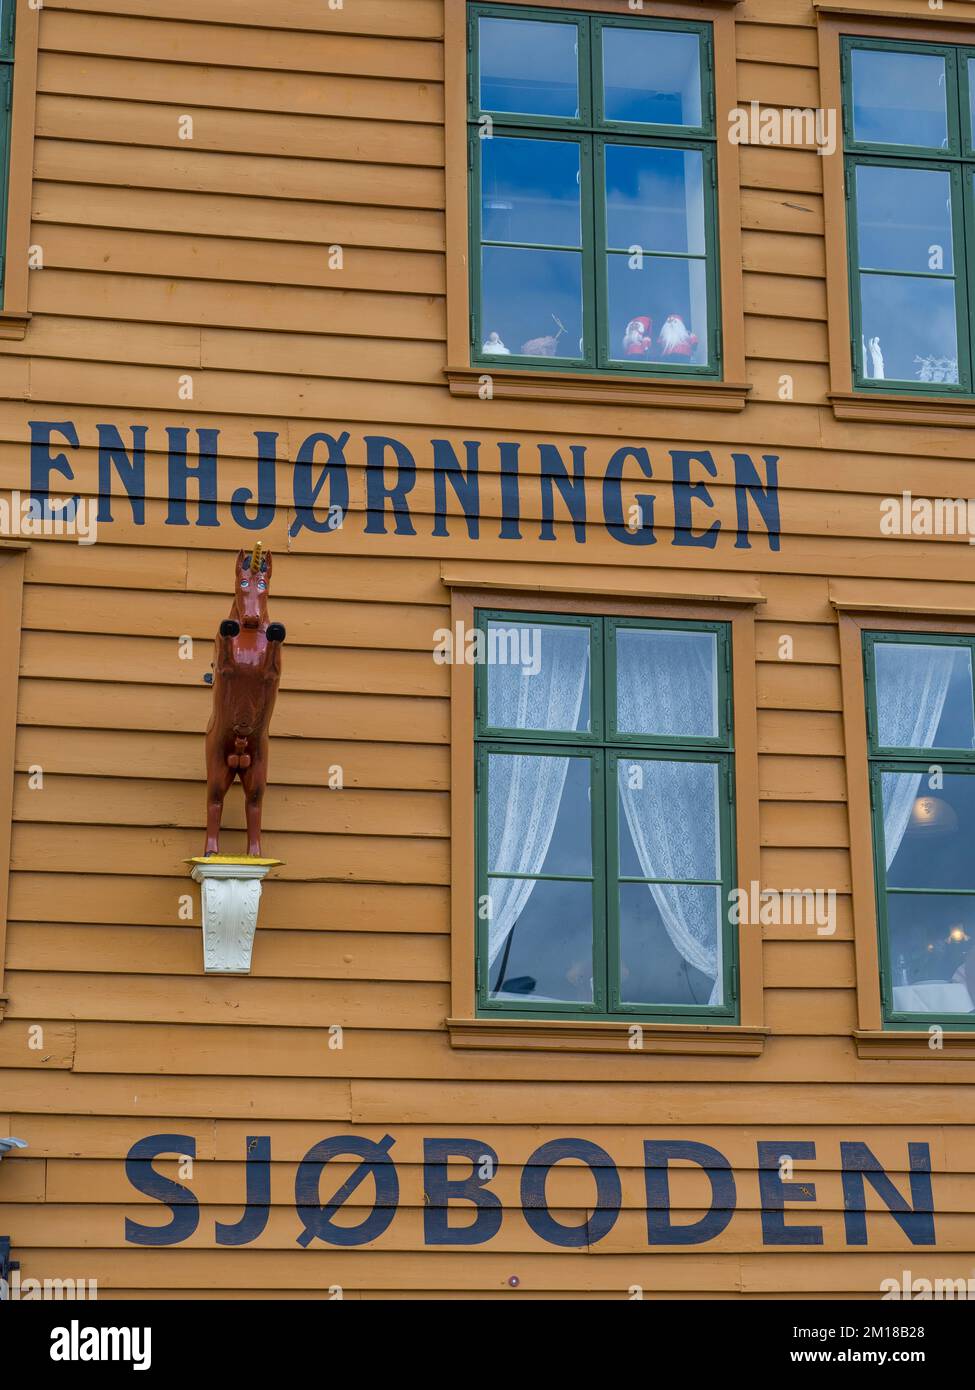 Sjøboden Bergen, Restaurant, Bergen Waterfront, Gelbes Traditionelles Gebäude, Bergen, Norwegen, Skandinavien, Europa. Stockfoto